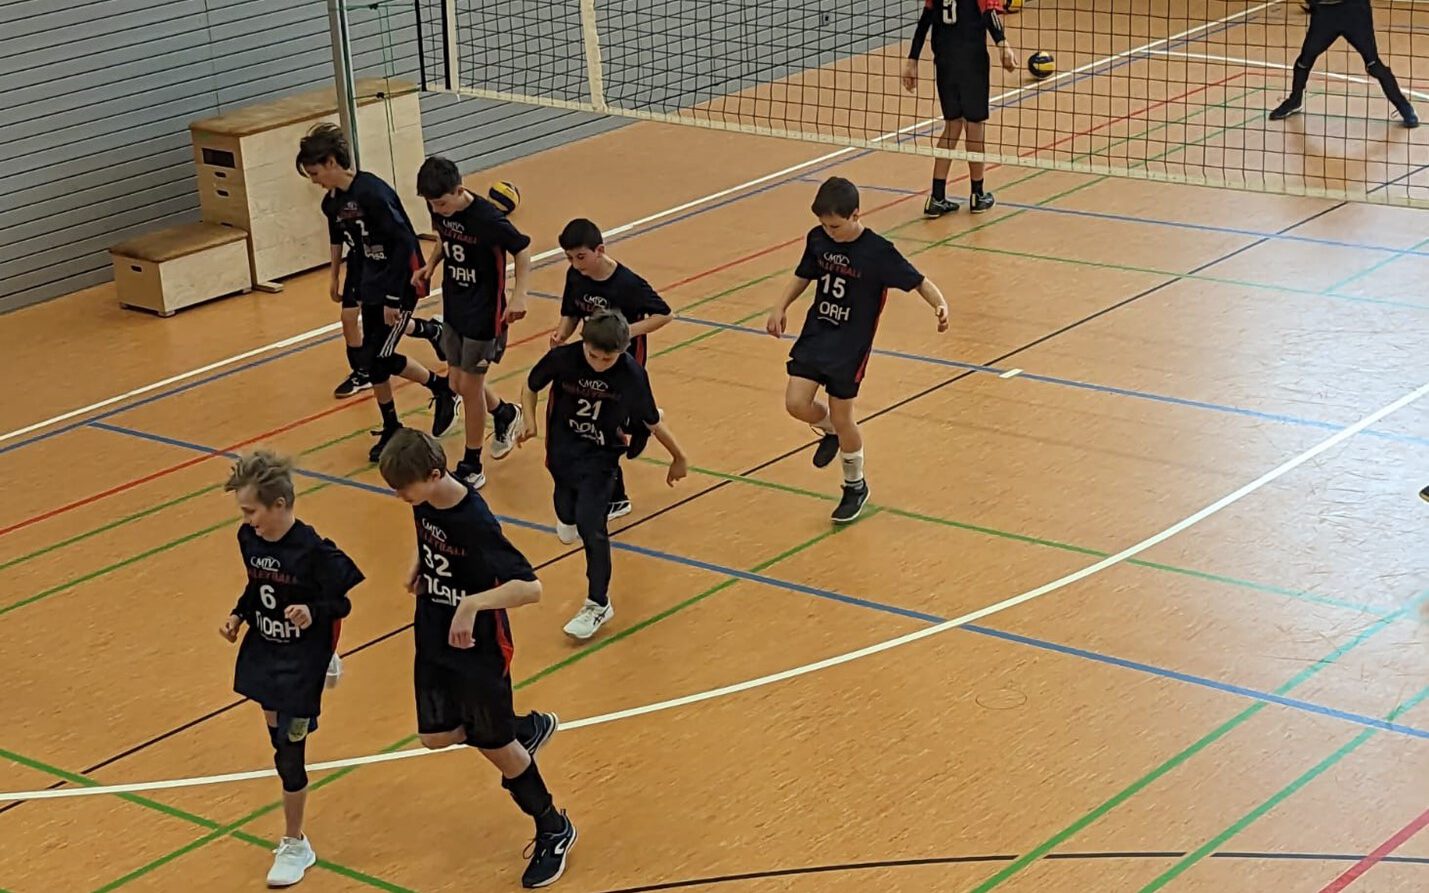 https://www.volleyball-rosenheim.de/wp-content/uploads/2023/02/U15_Jungend_Volleyball_Rosenheim-e1676619329462.jpg